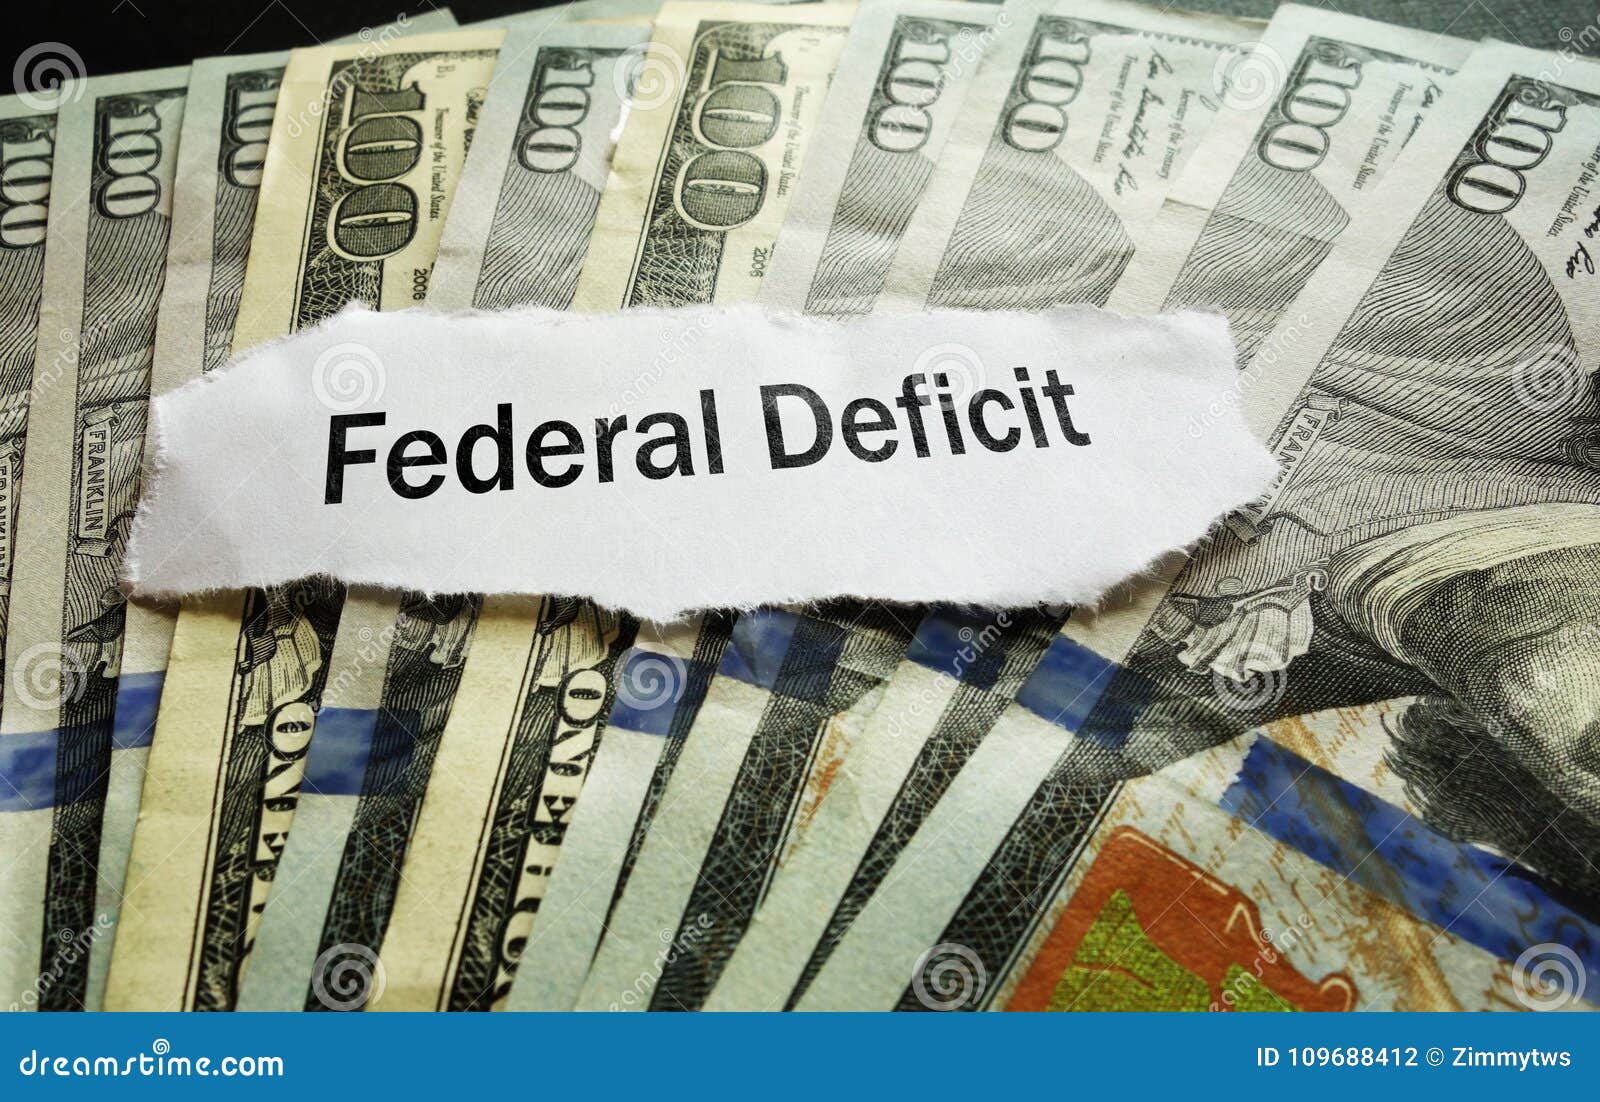 federal deficit news headline